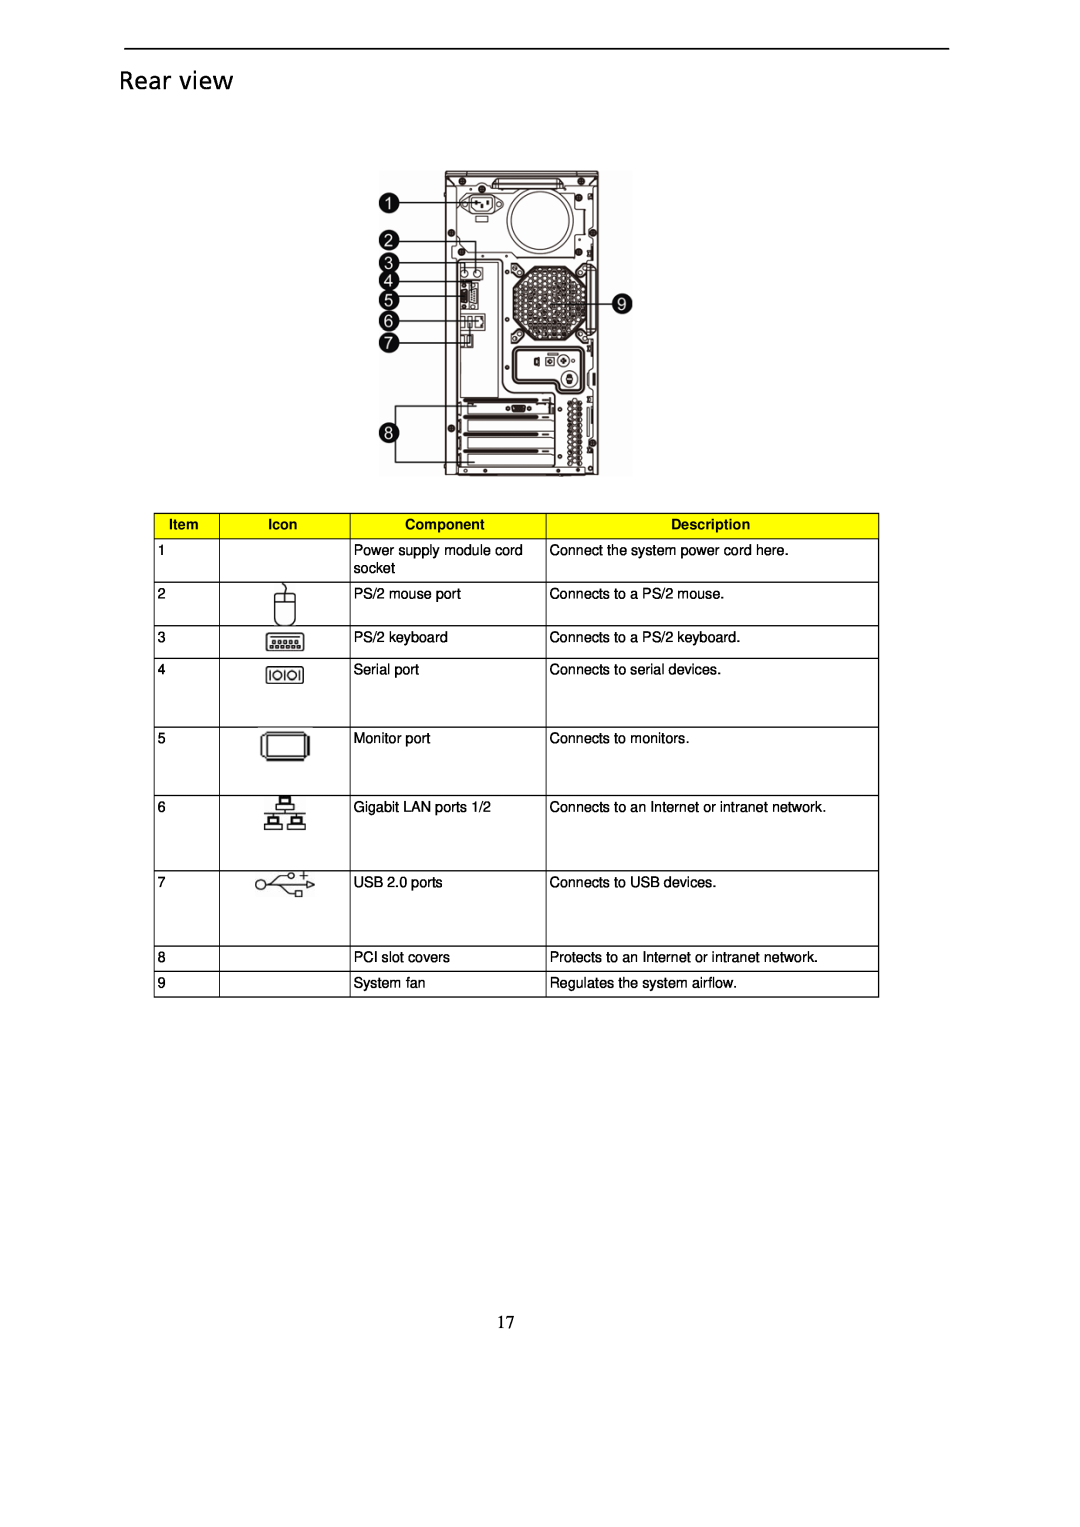 Gateway GT115 manual Rear view, Icon, Component, Description 